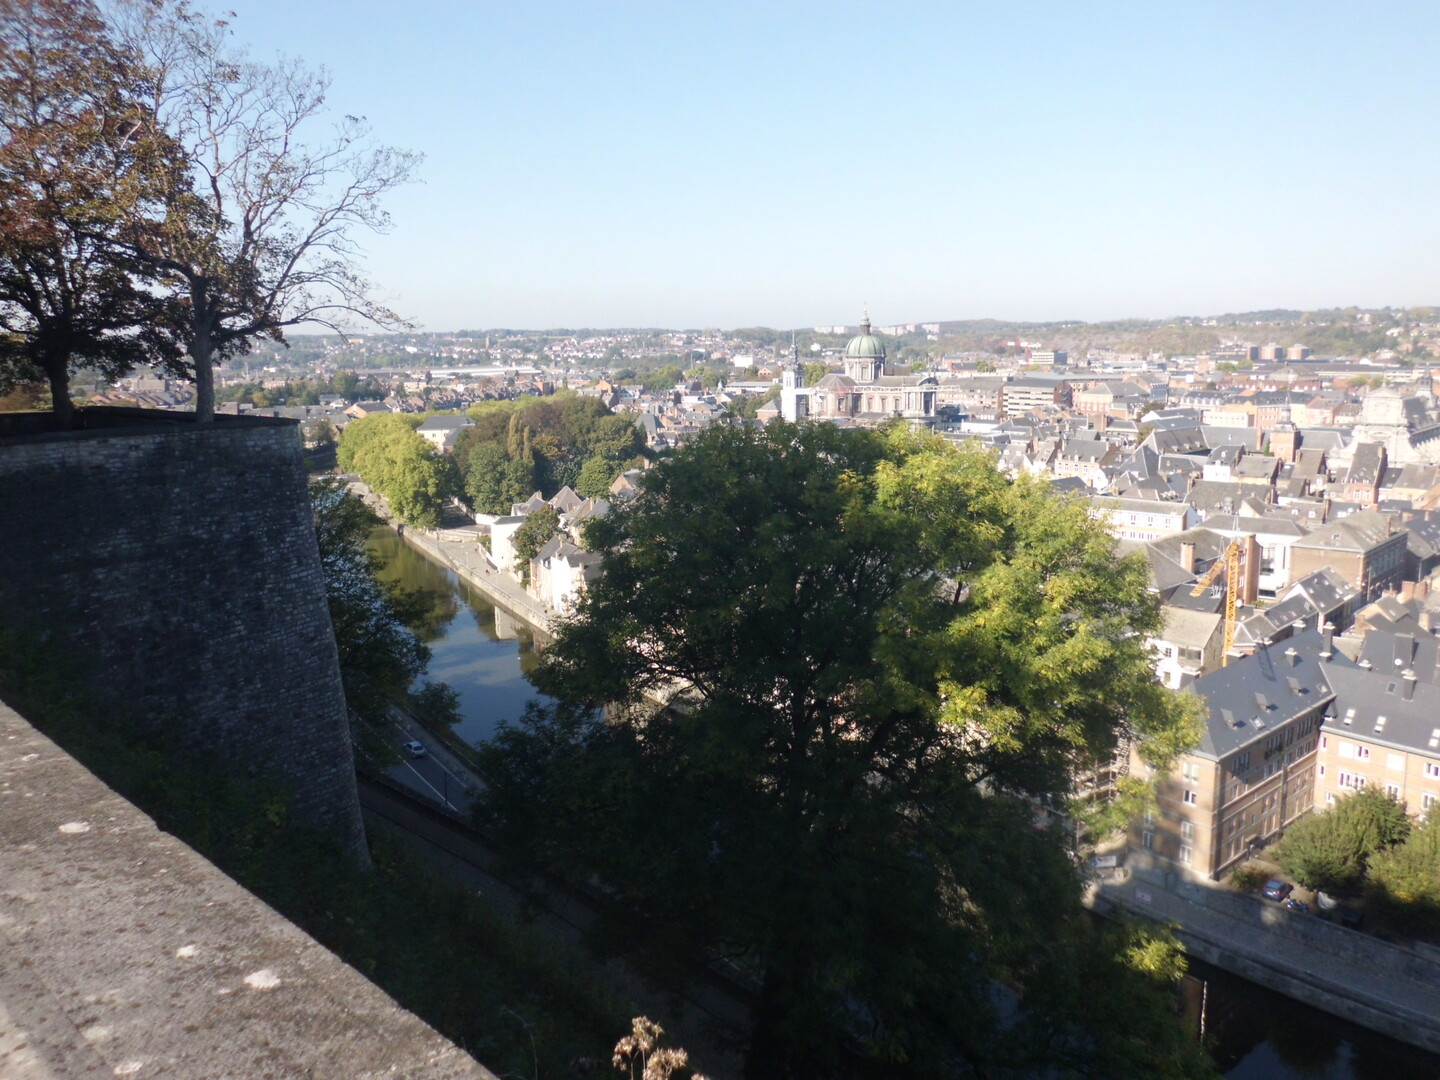 Blick auf die Innenstadt/Altstadt von Namur mit der Kathedrale Saint-Aubain im Mittelpunkt